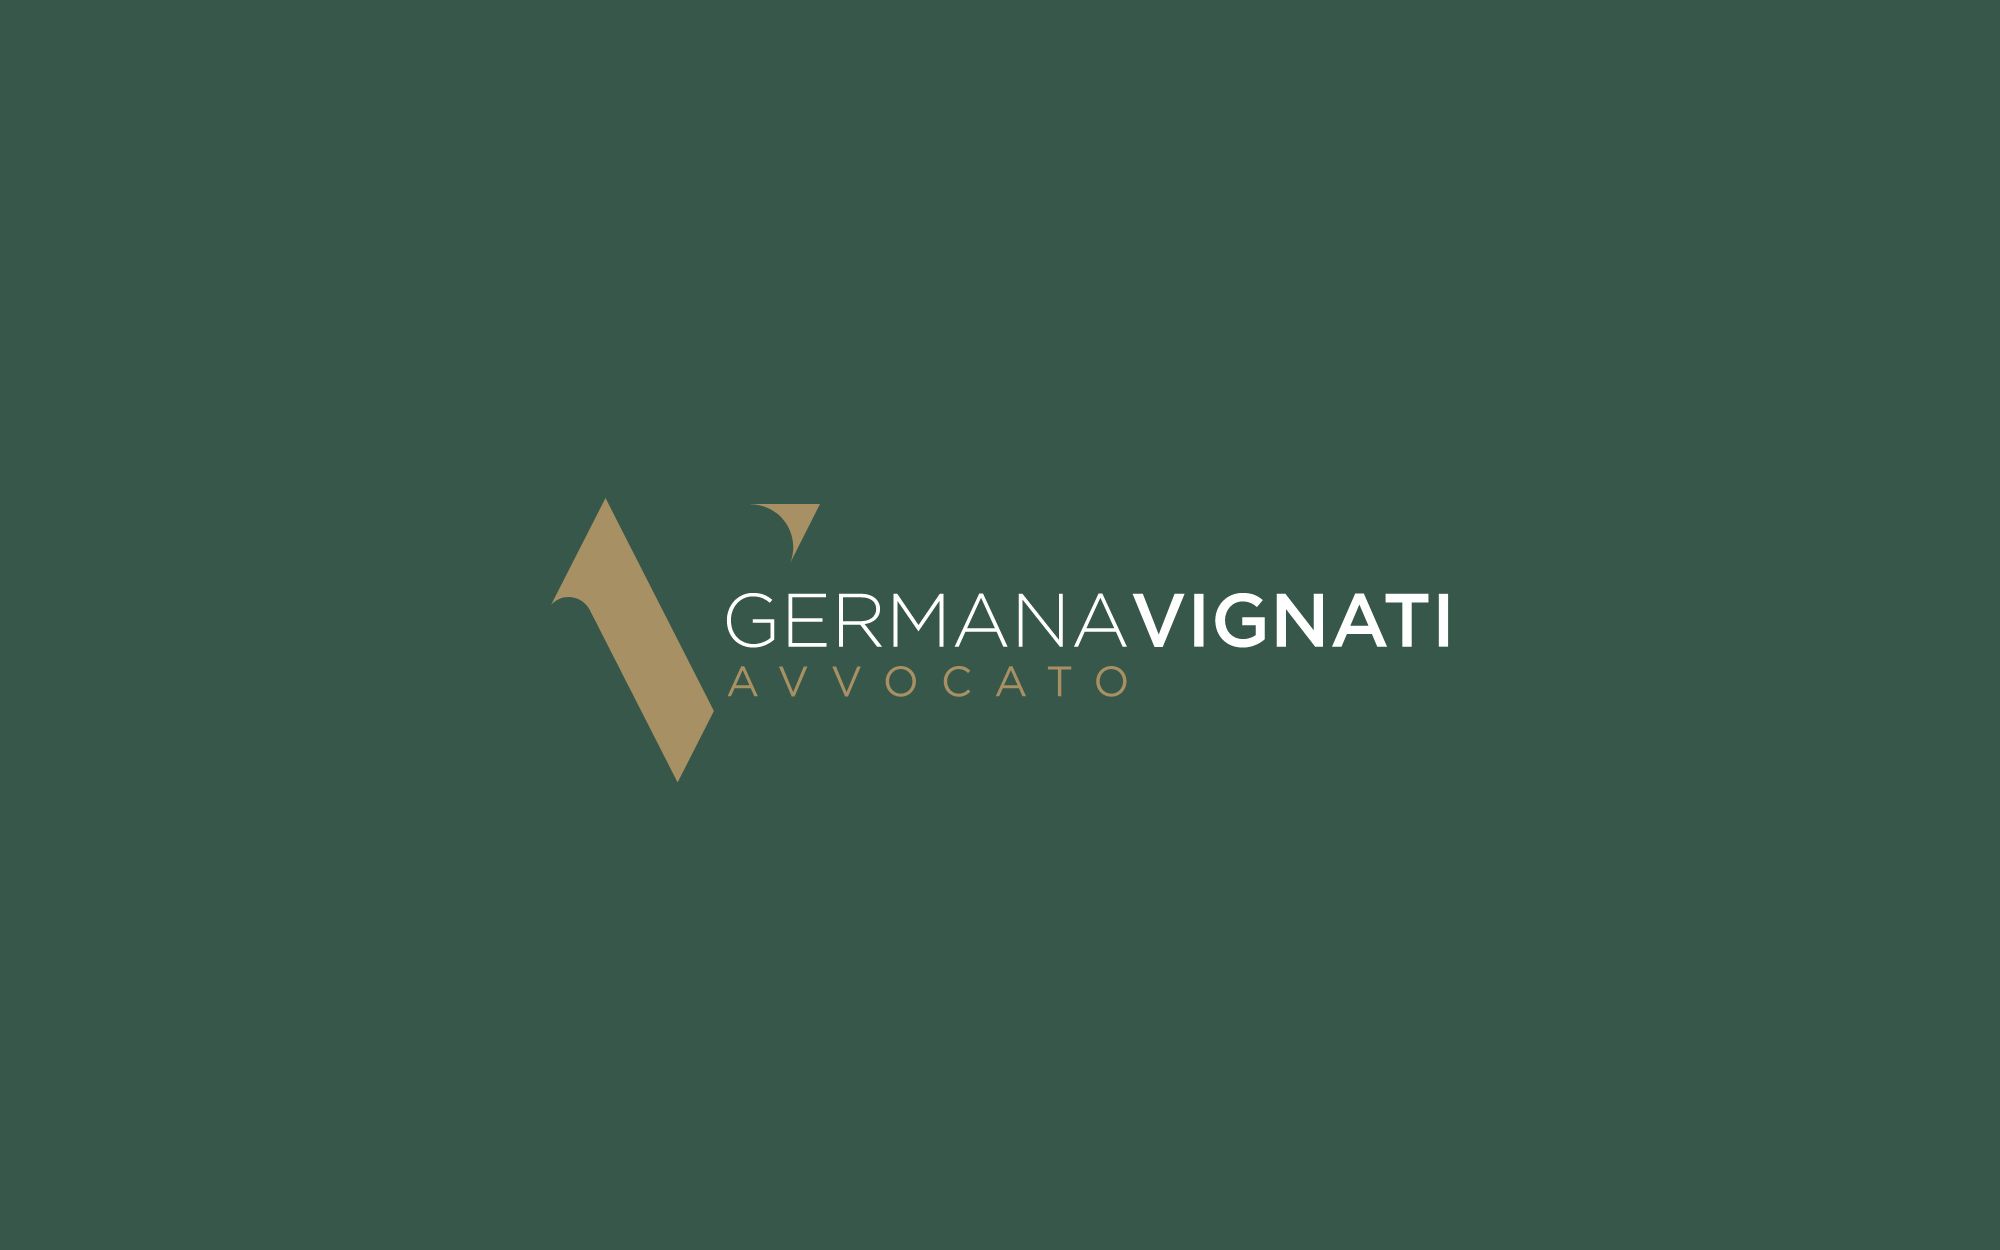 randomlab-progetti-avvocato-germana-vignati-logo